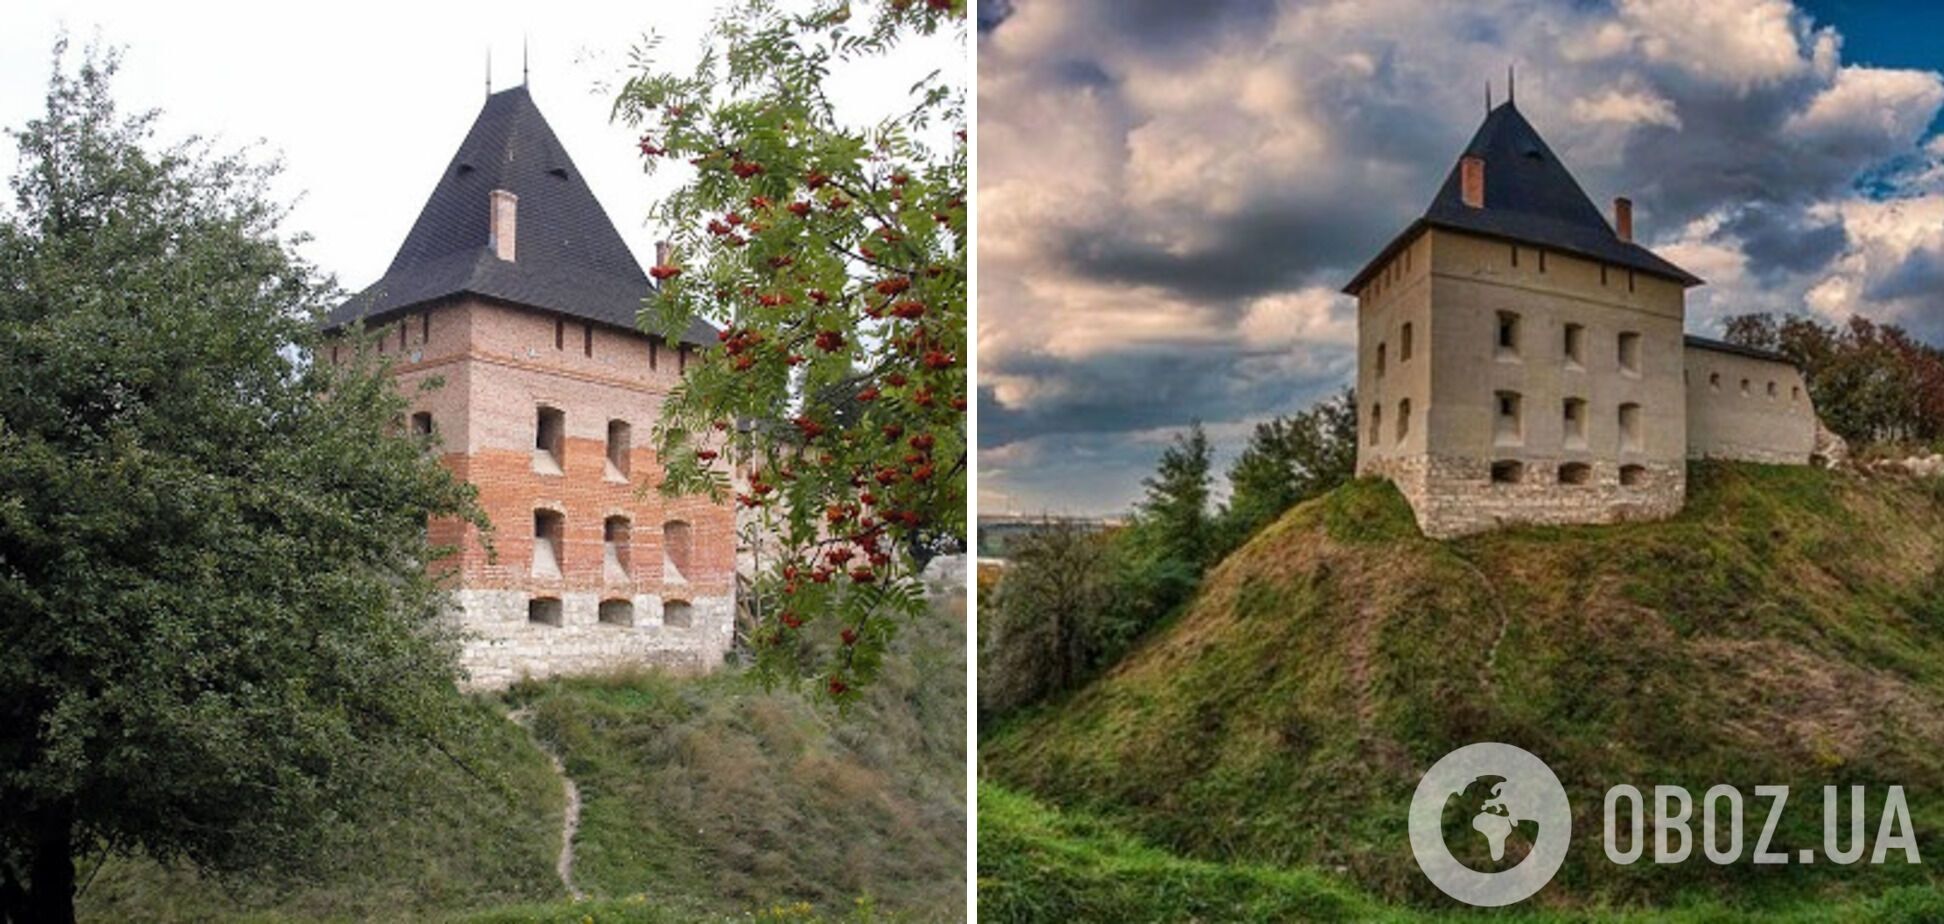 Галицкий замок в Ивано-Франковской области был построен в XIV в.